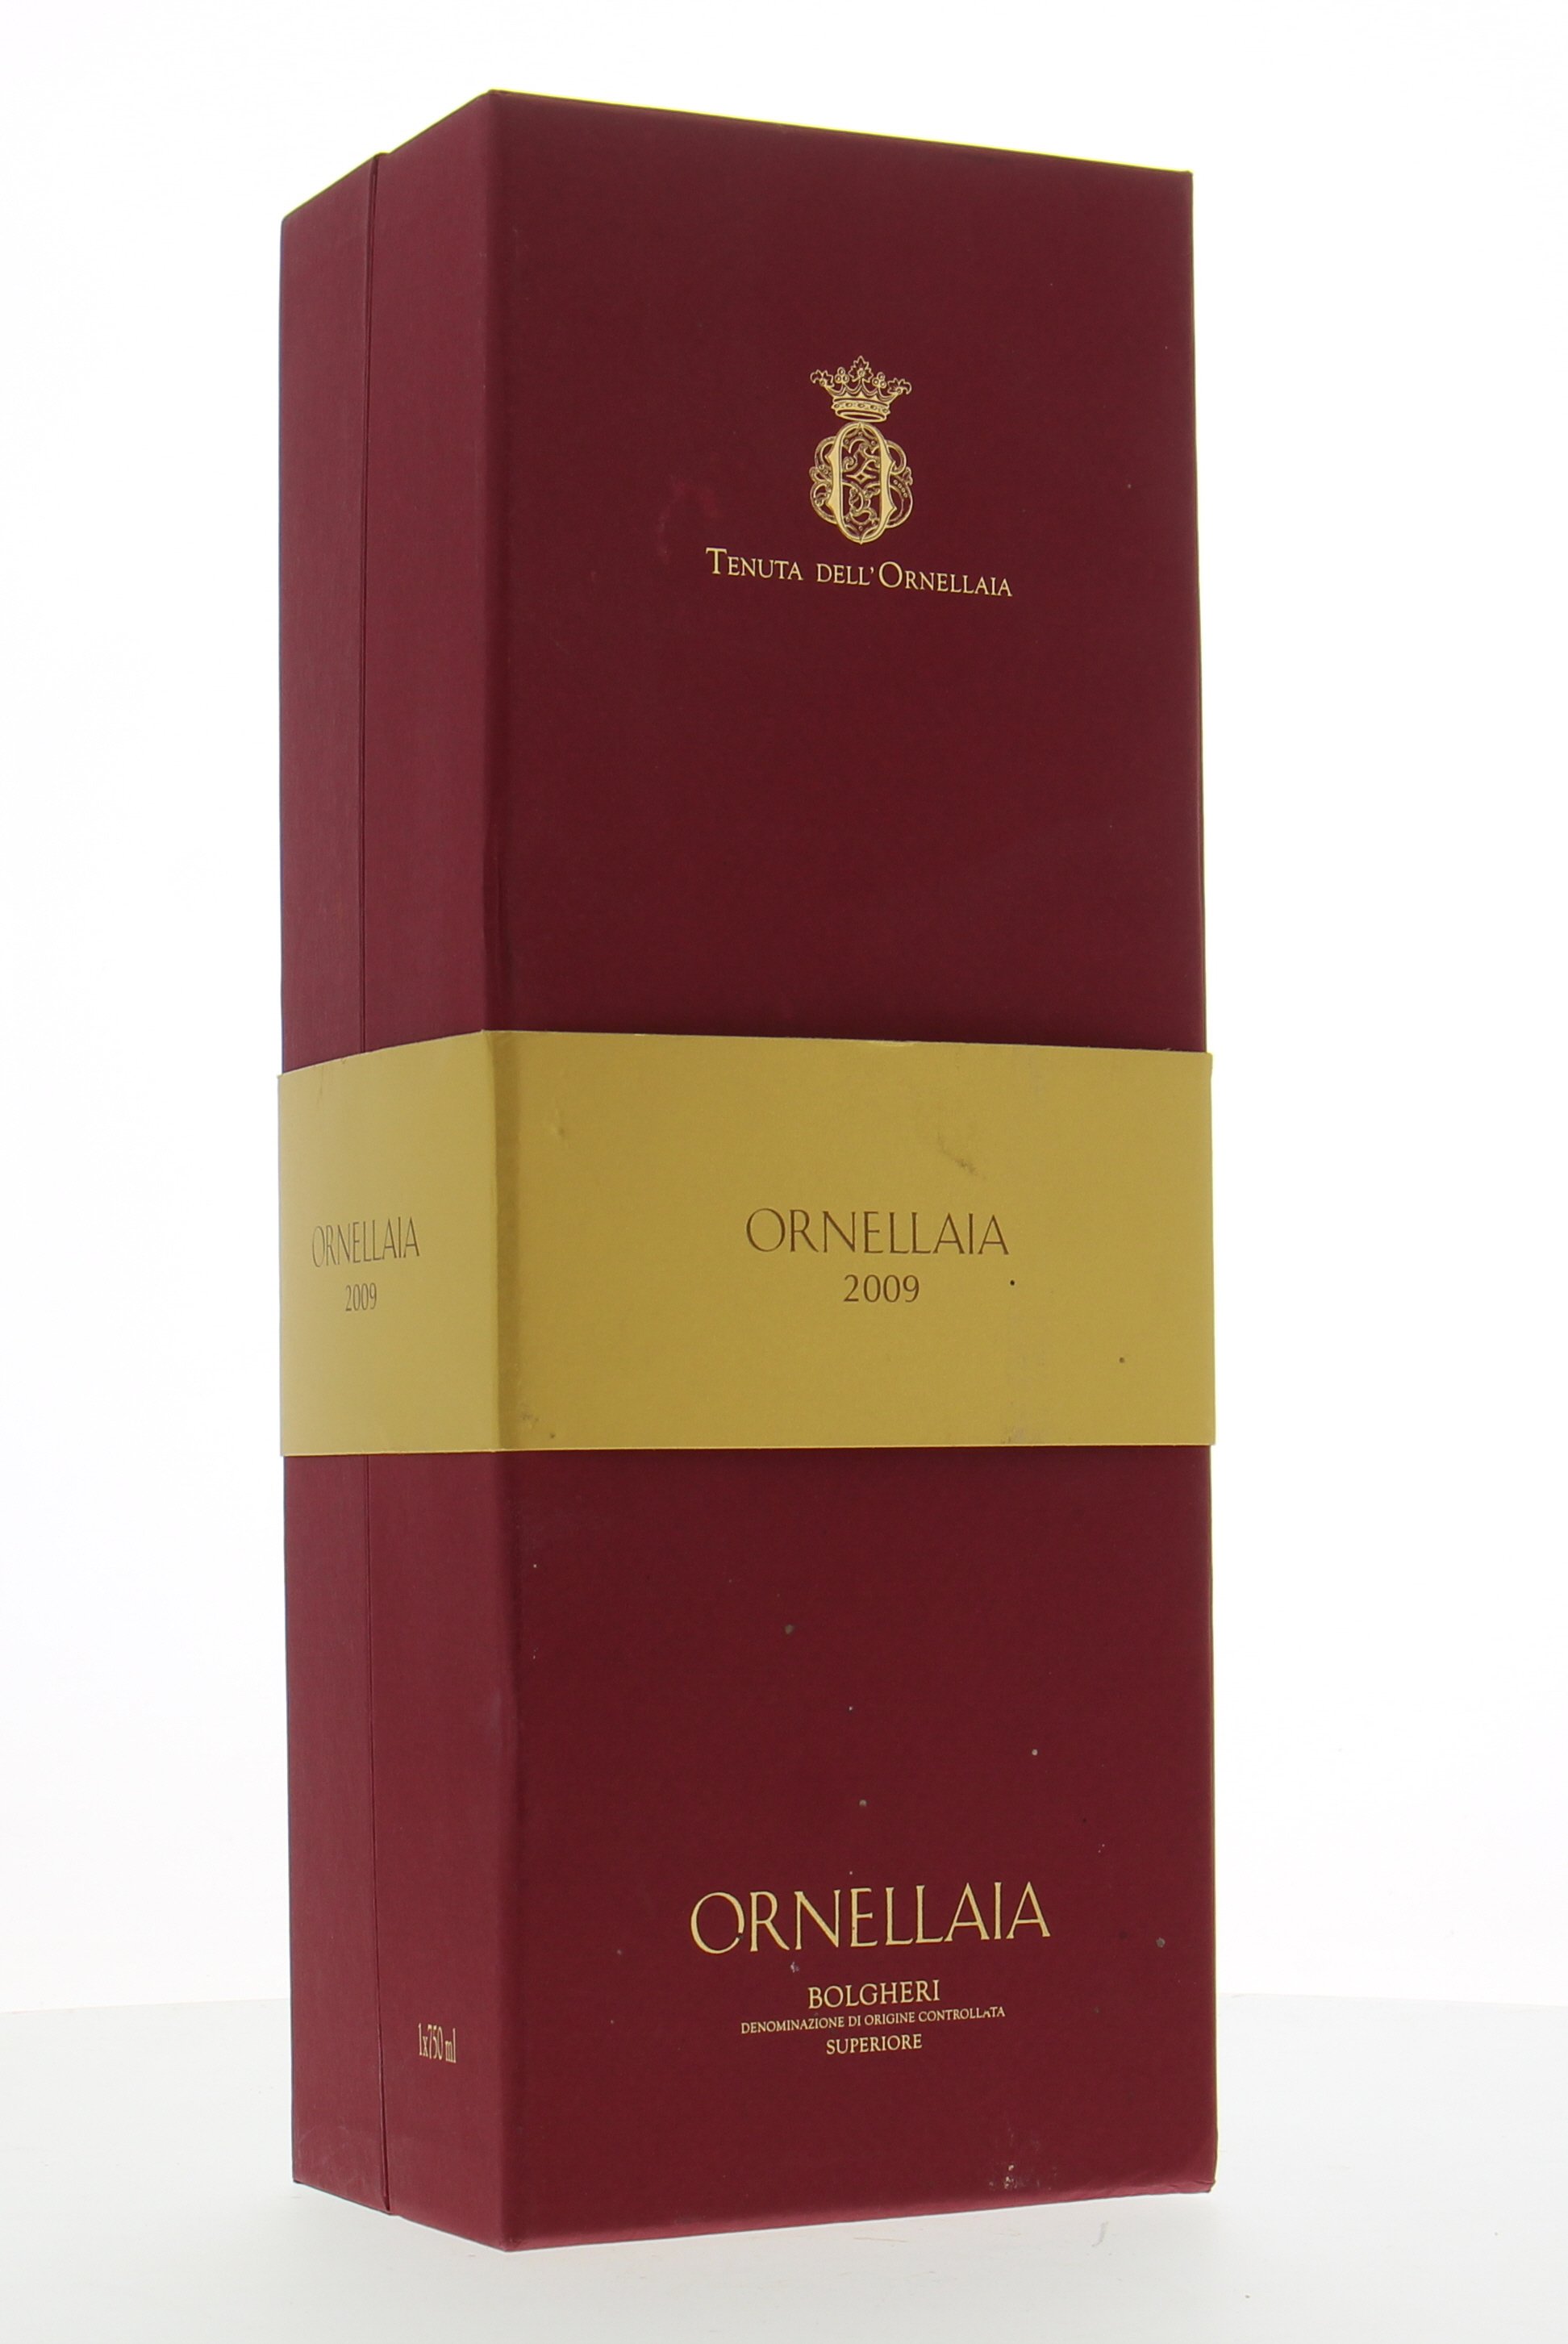 Tenuta dell' Ornellaia - Ornellaia 2009